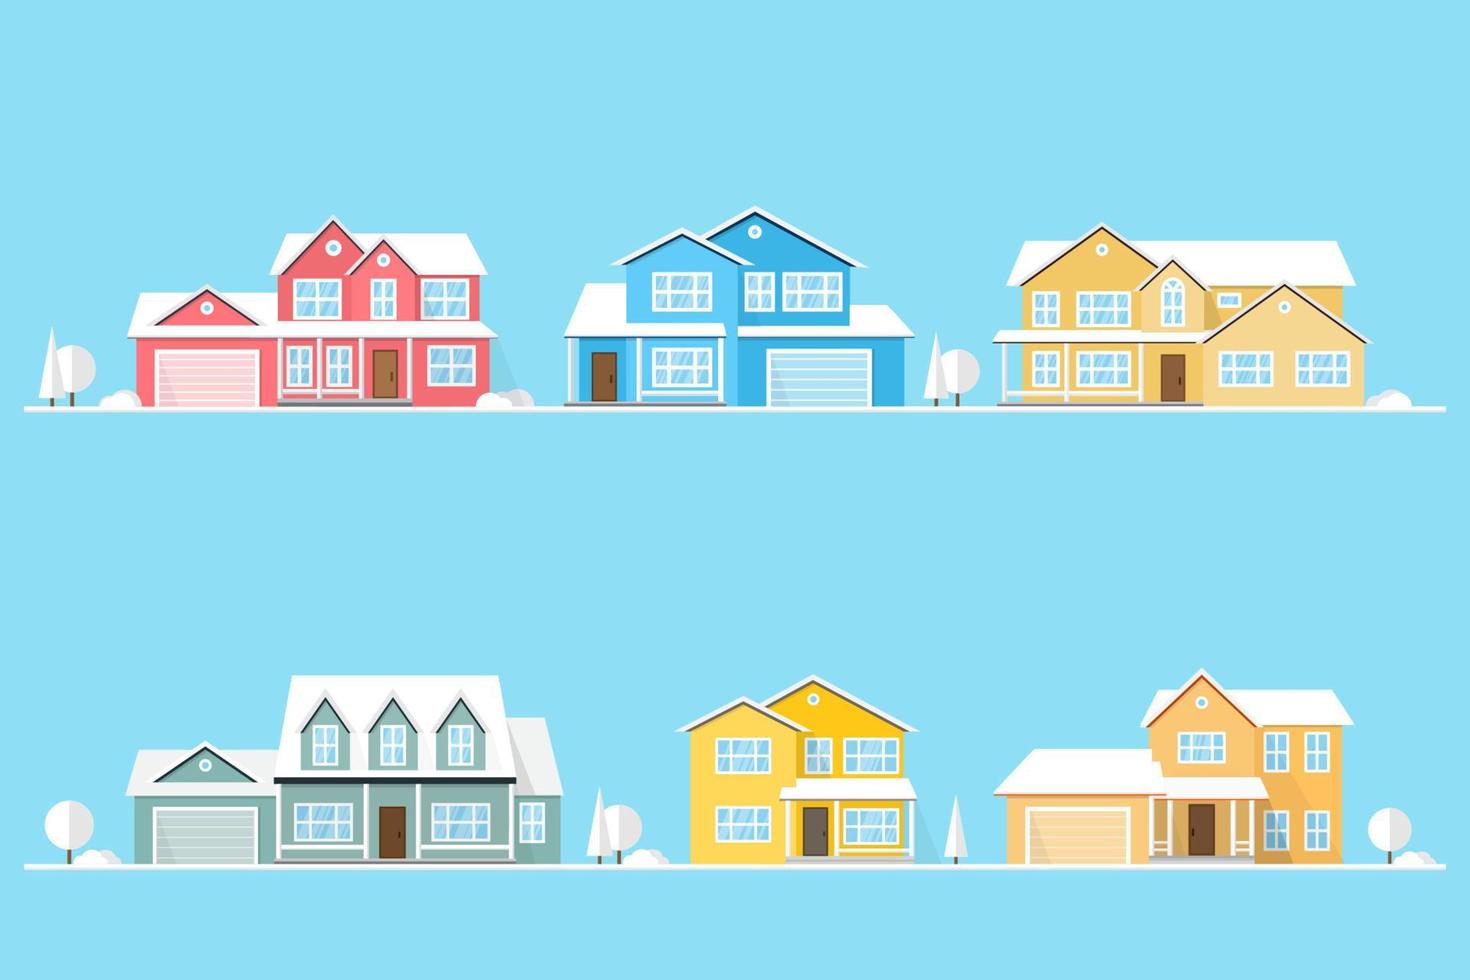 nachbarschaft mit häusern auf blau dargestellt. vektor